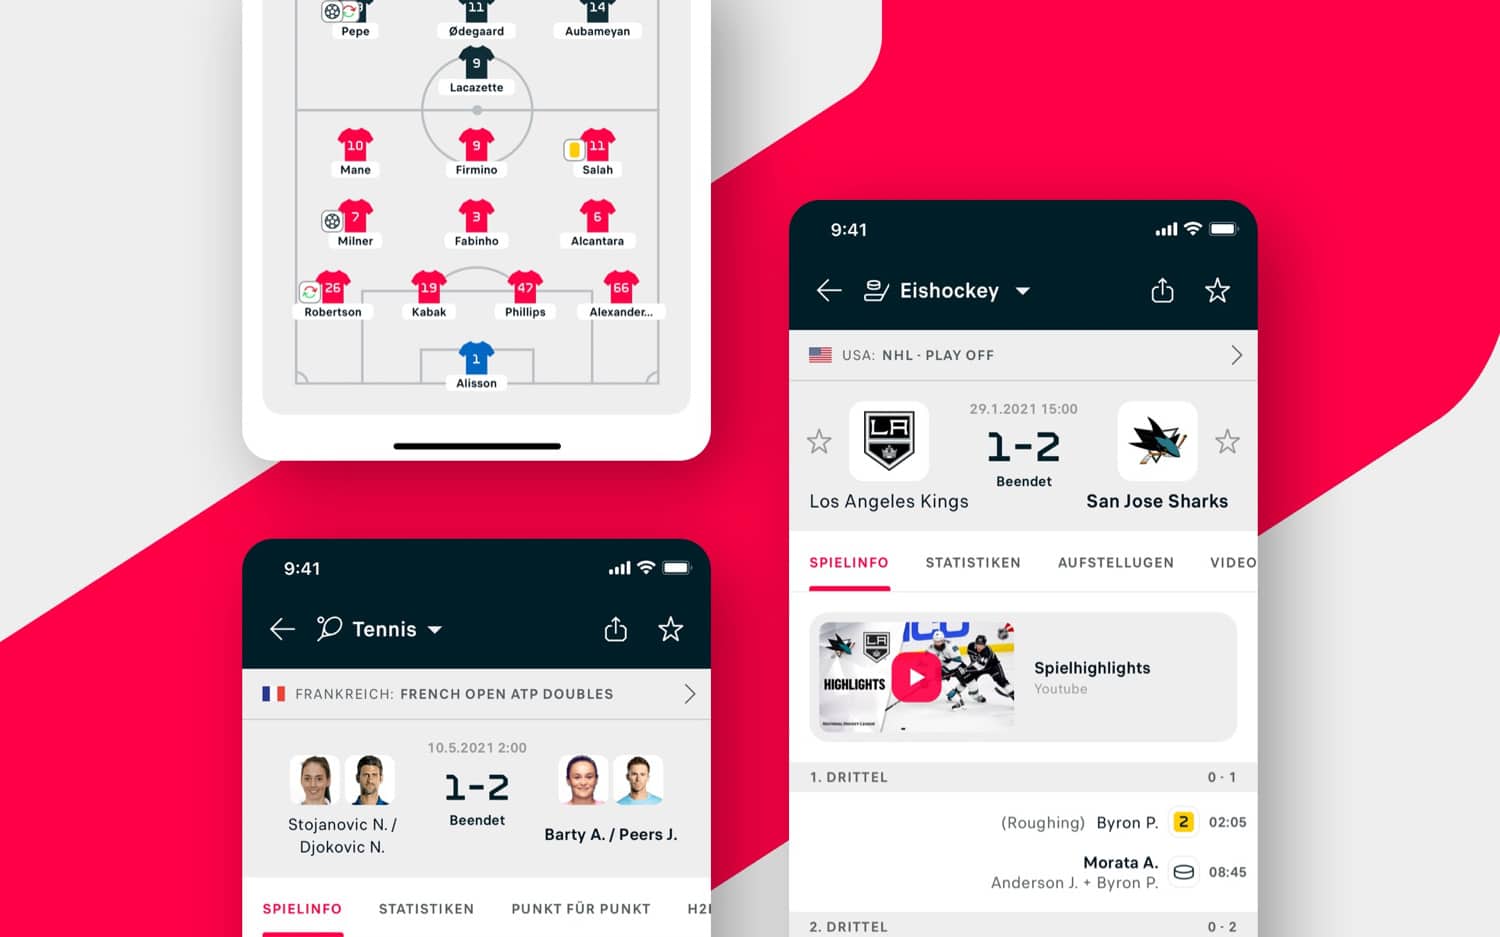 Flashscore App bietet Live-Ticker und -Ergebnisse für über 30 Sportarten